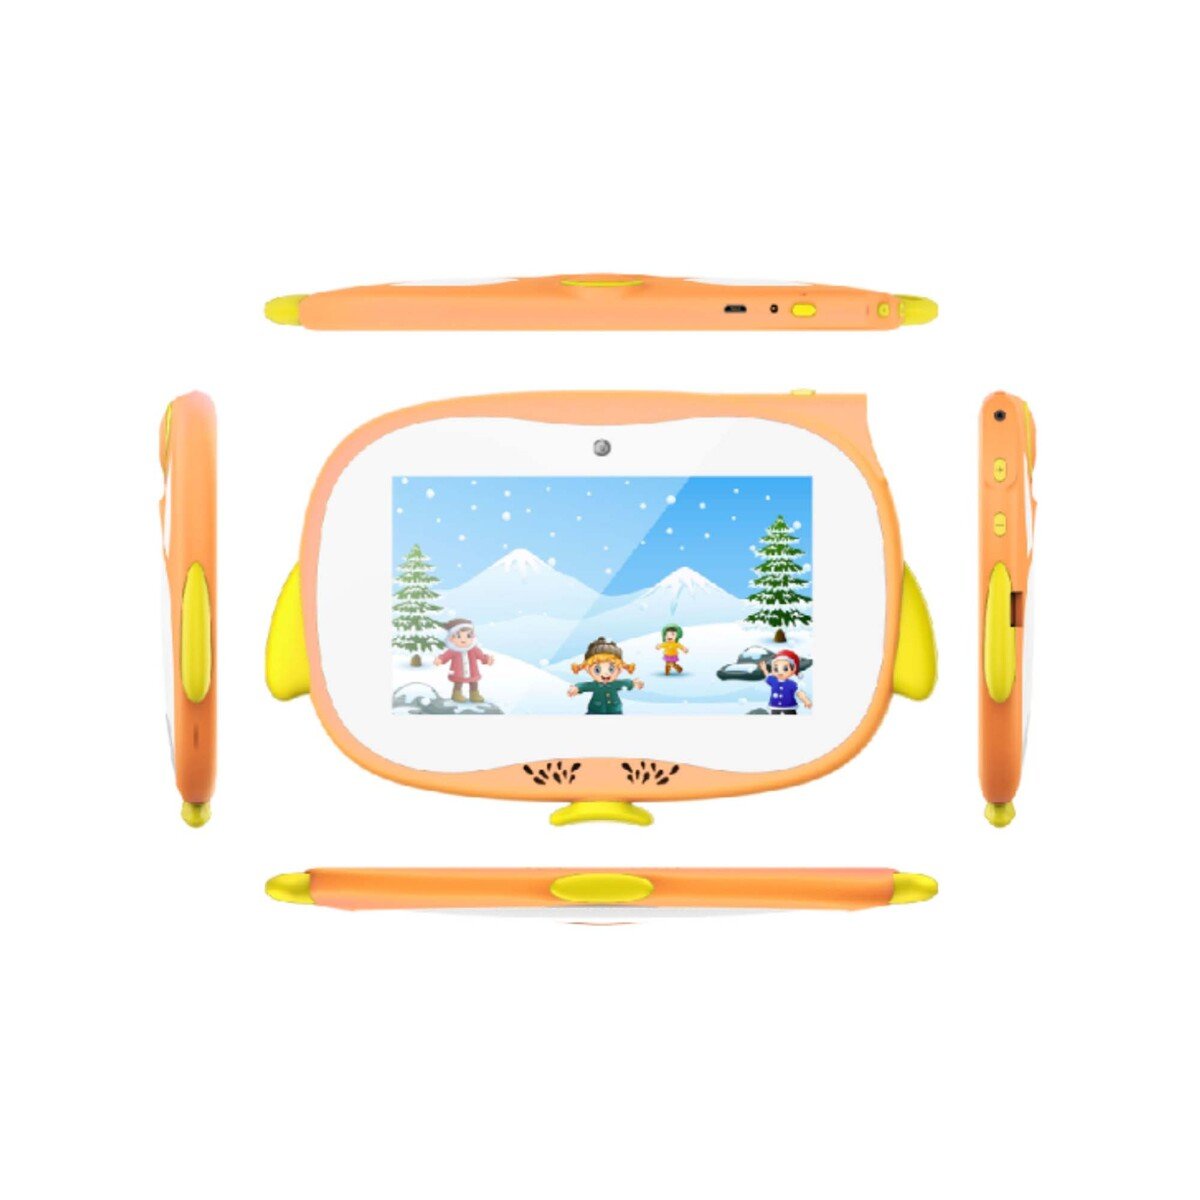 ايكون جهاز لوحي للأطفال IK-KW708-واي فاي,1جيجابايت,8جيجابايت,7انش ألوان متنوعة (برتقالي,أخضر)